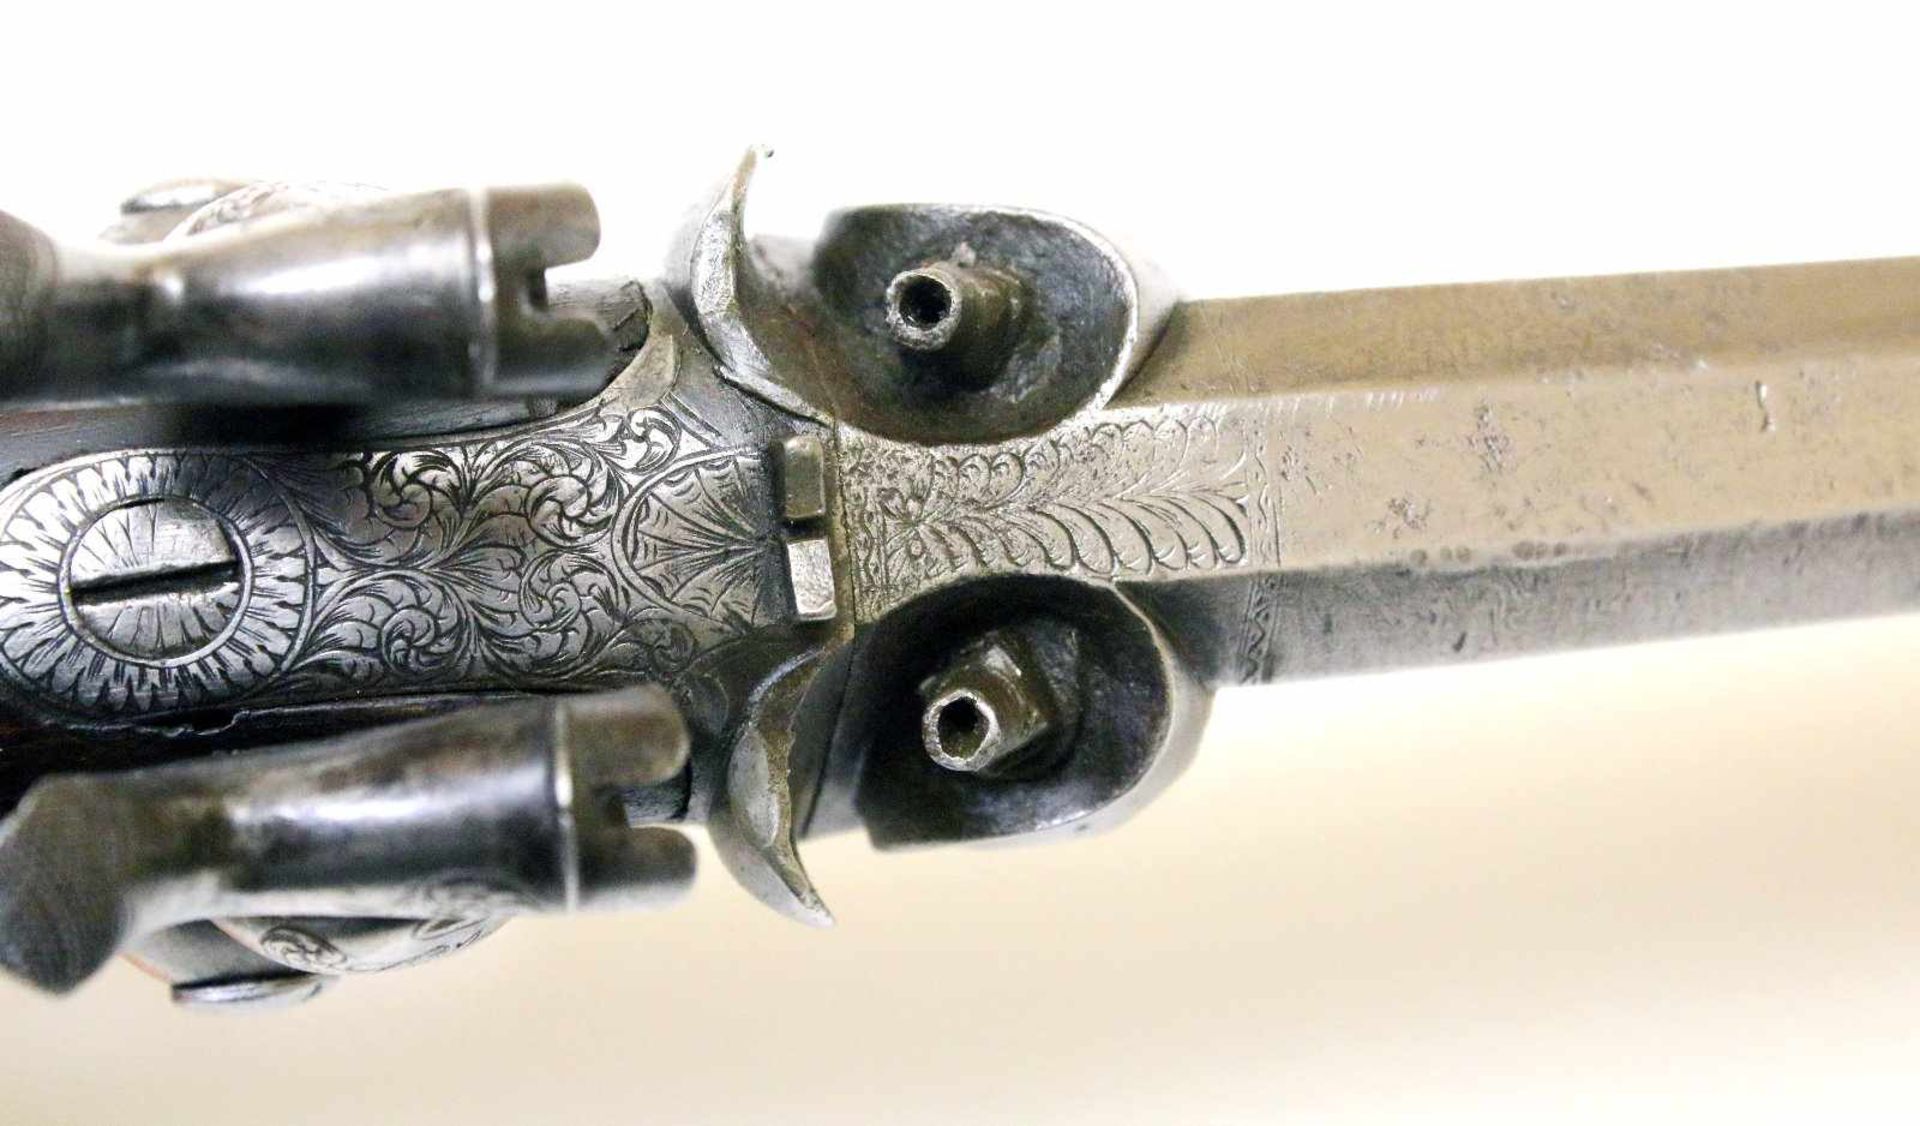 Doppelläufige Perkussionspistole - England um 1850 Cal. 14mm Perk., Zustand 2. Zwei übereinander - Bild 14 aus 15